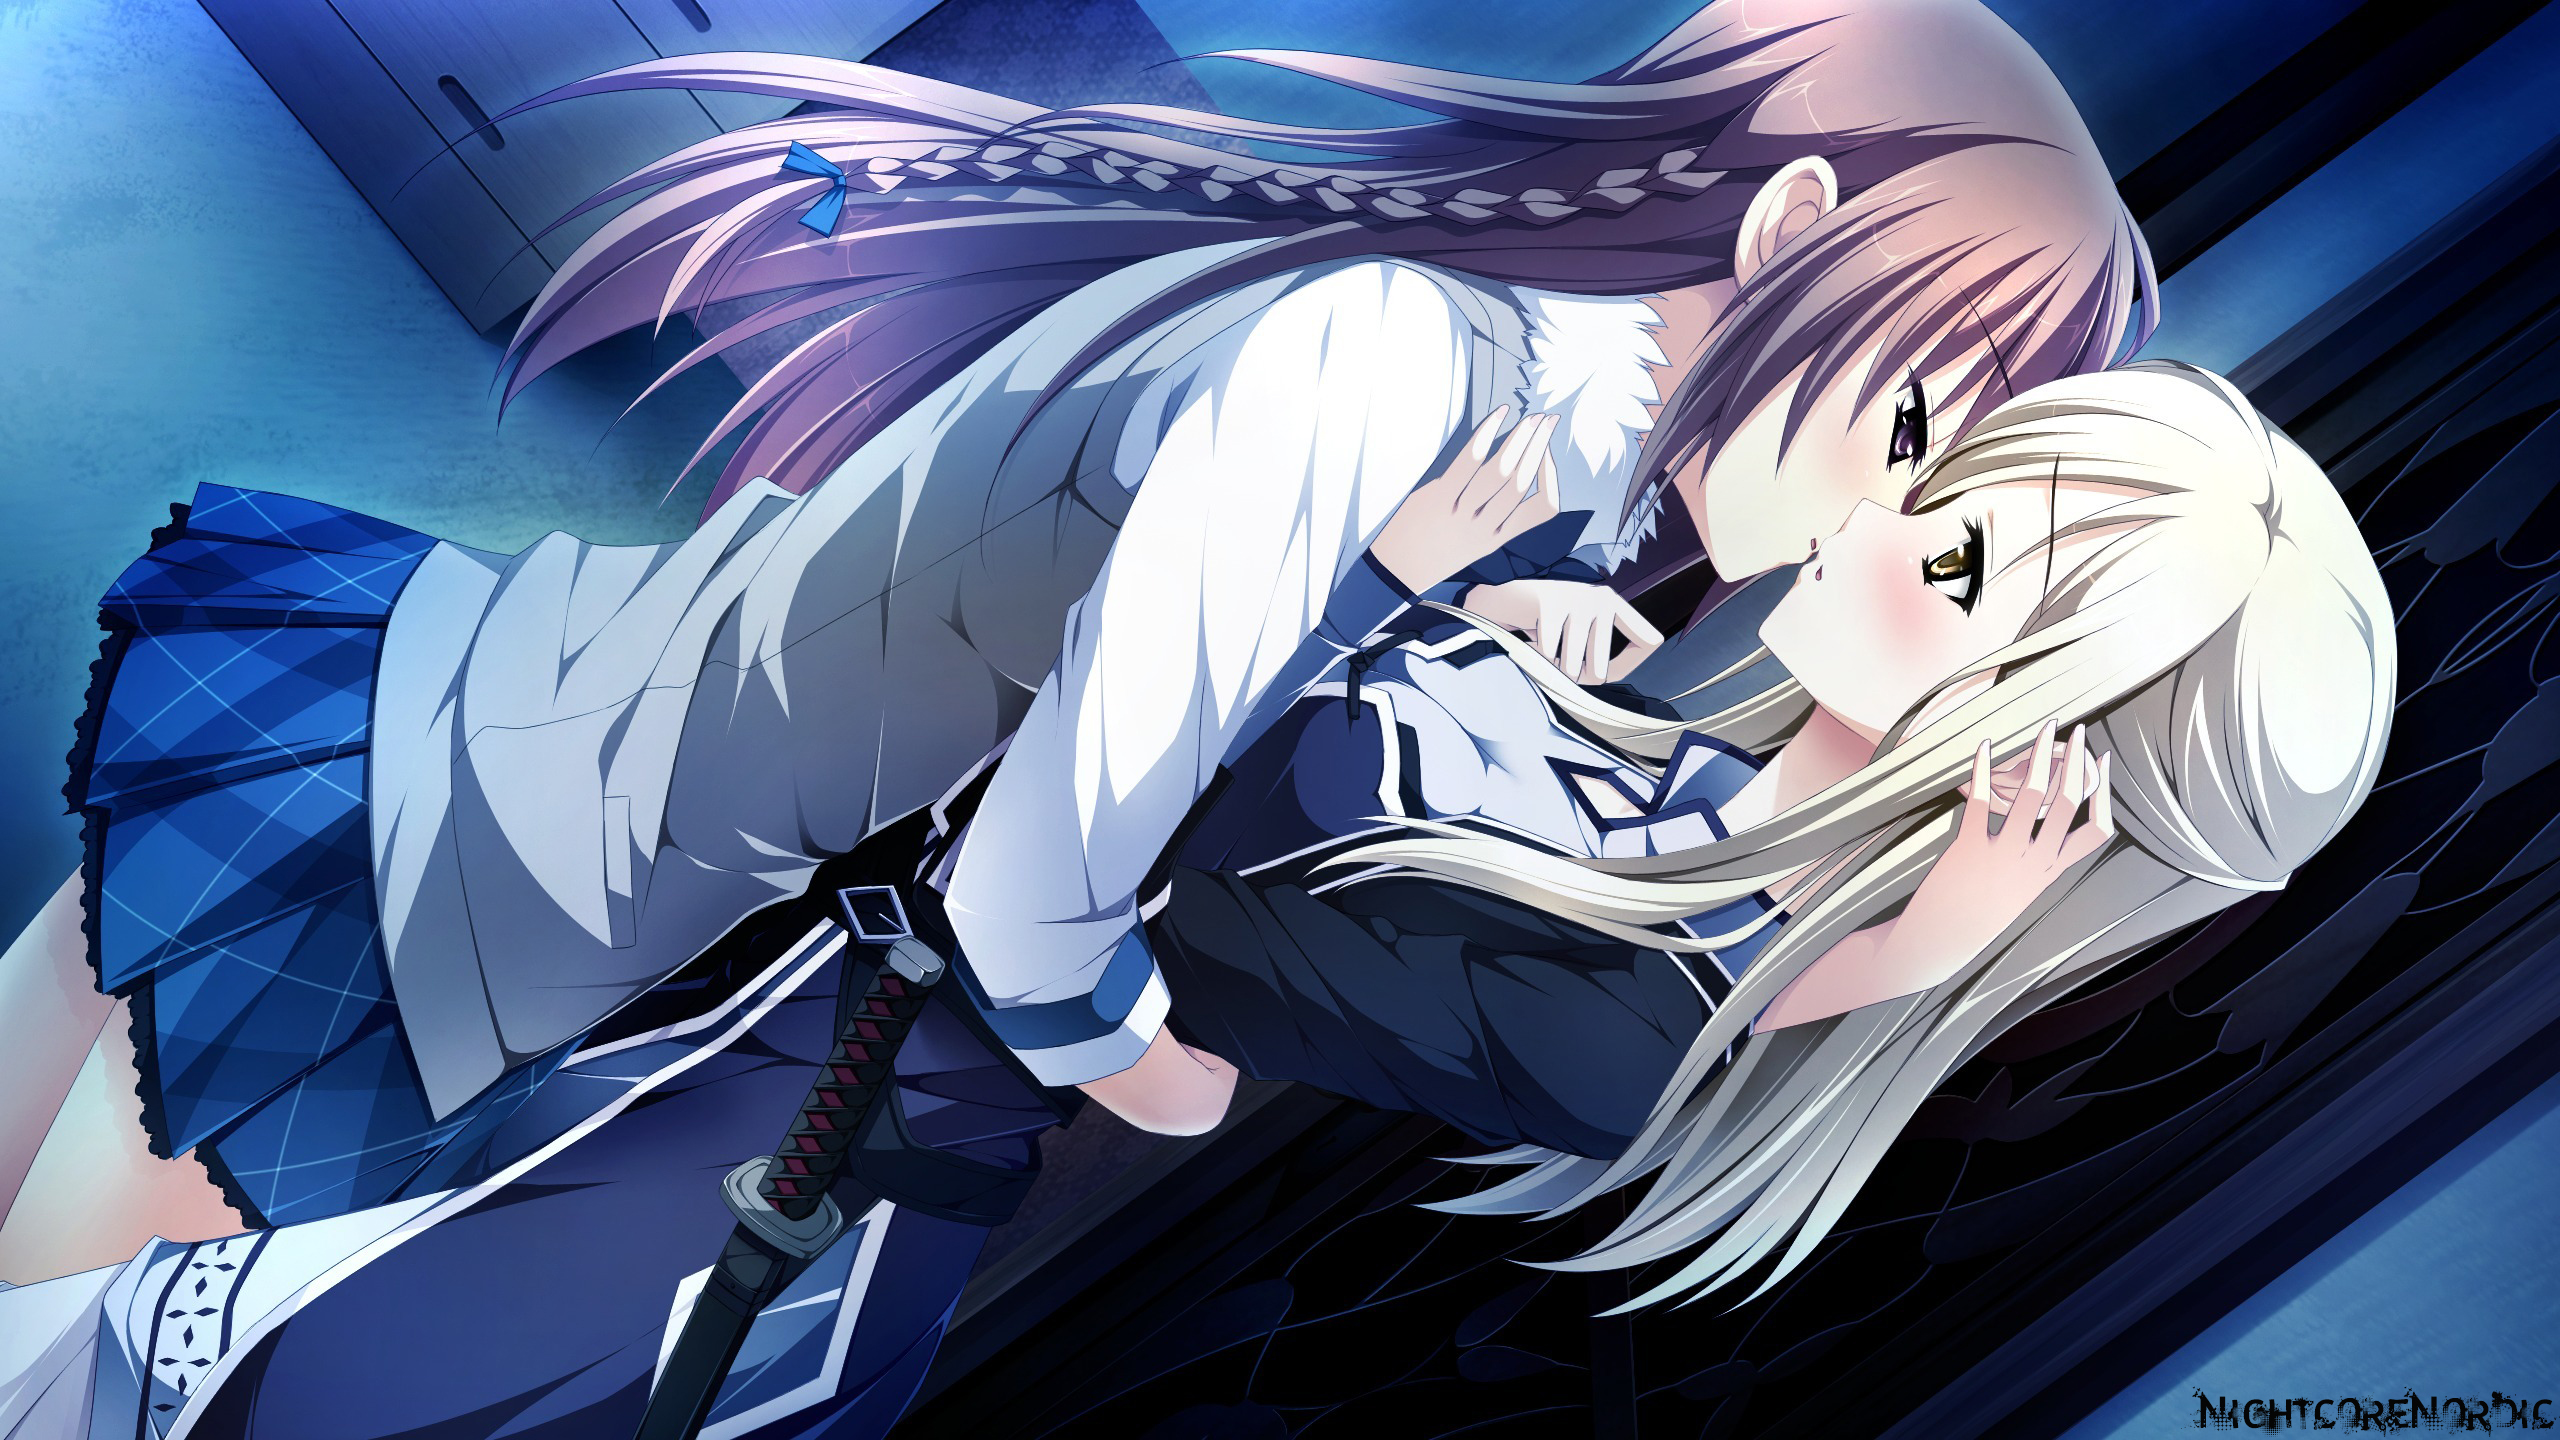 Upendo In The Dark - Anime Girls Kissing Anime Girls - 2560x1440 Wallpaper  